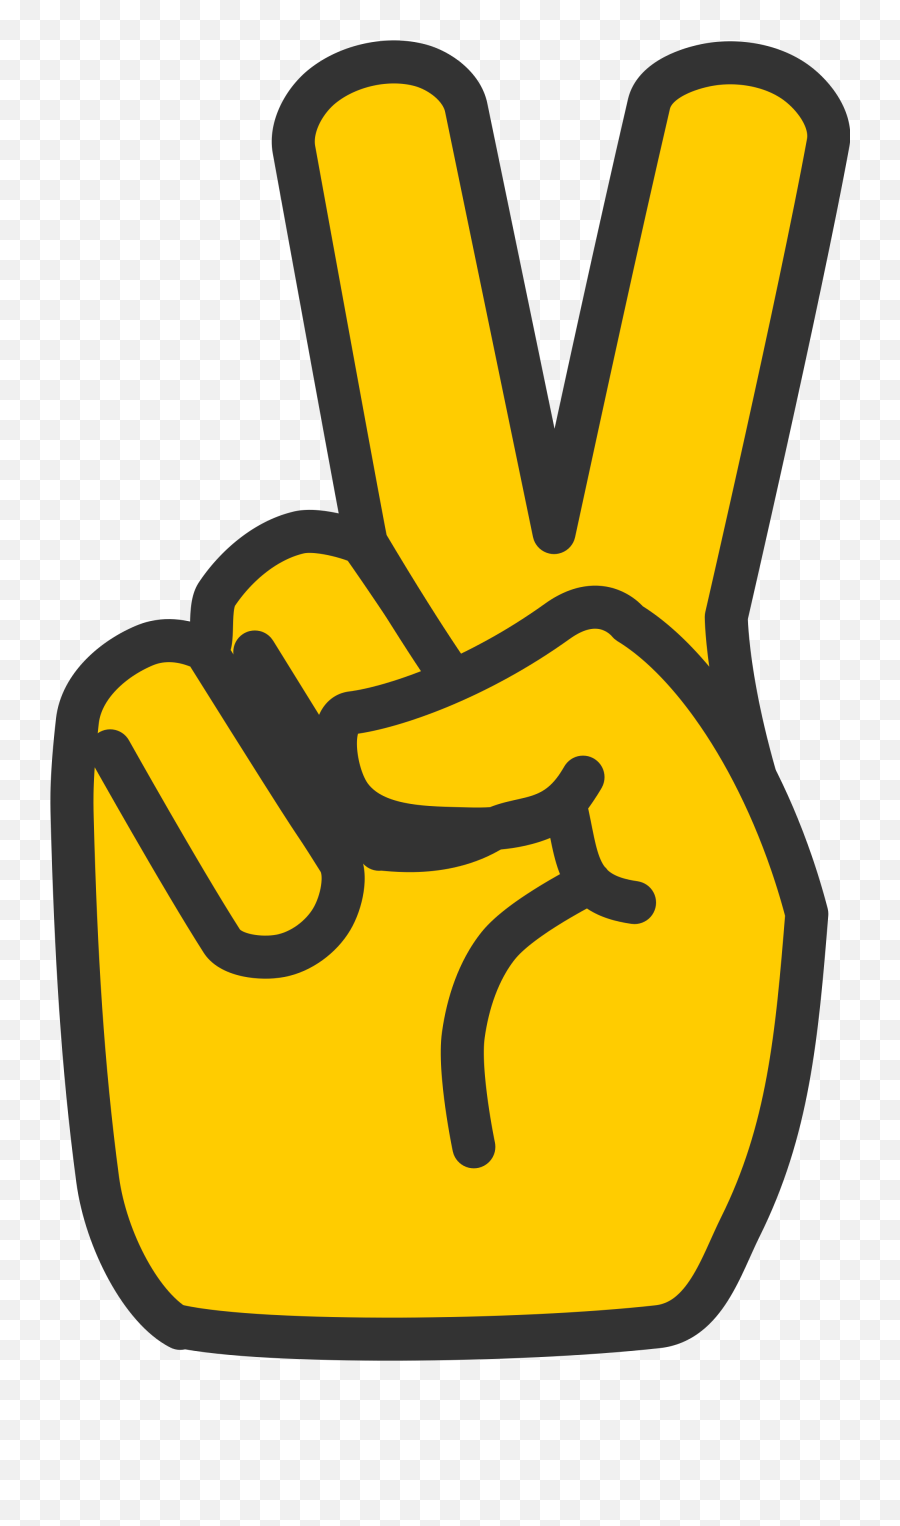 Victory V Sign Transparent Png Image - Gambar 2 Jari Png Emoji,V For Victory Emoticon